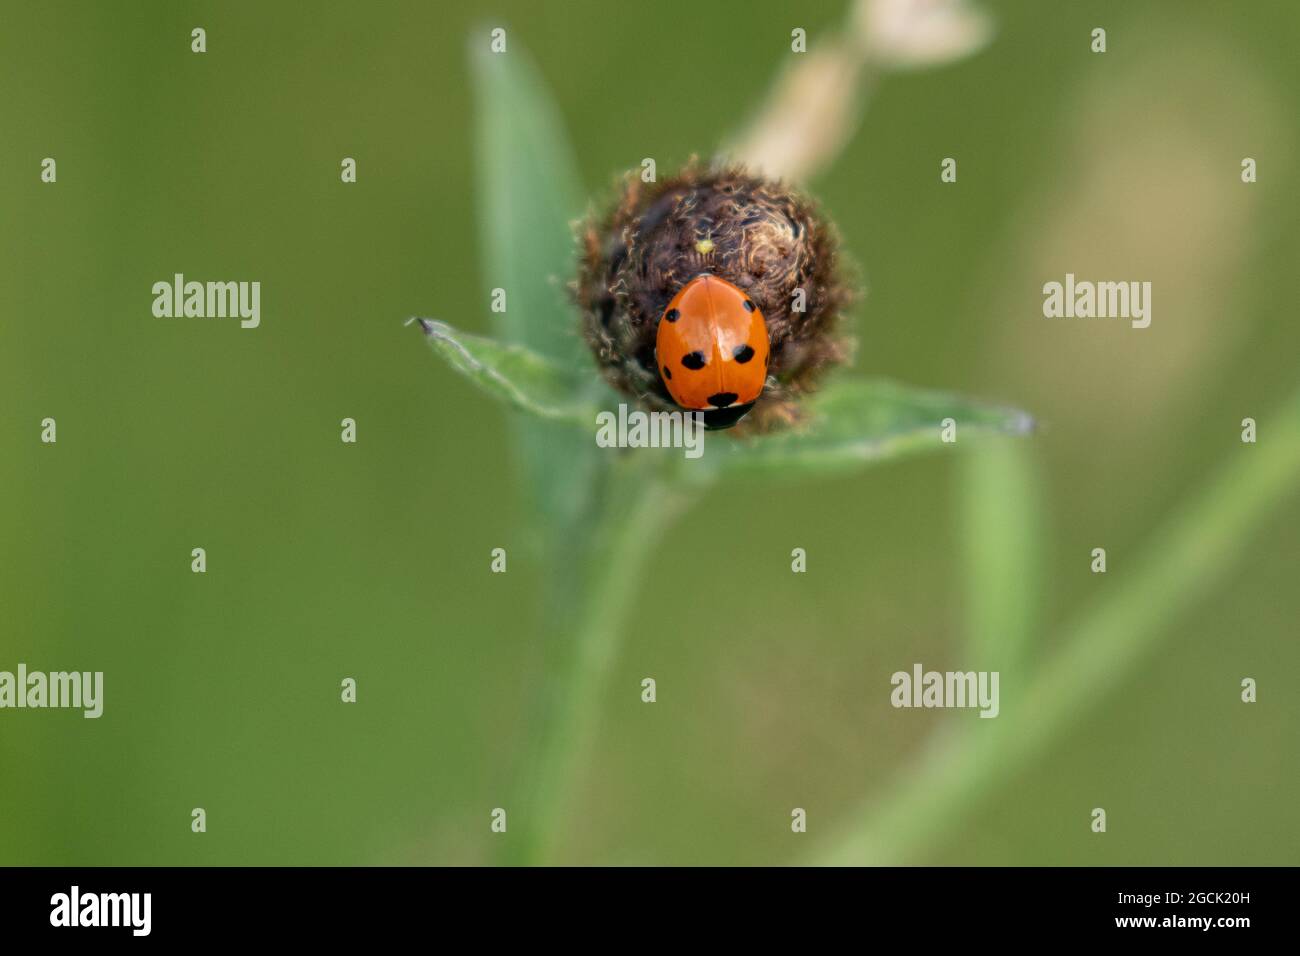 Ein Marienkäfer (Marienkäfer, Marienkäfer) auf einem Samenkopf. Dieser kleine rote Käfer hat 7 schwarze Flecken. Coccinella septempunctata - 7 Marienkäfer. Stockfoto